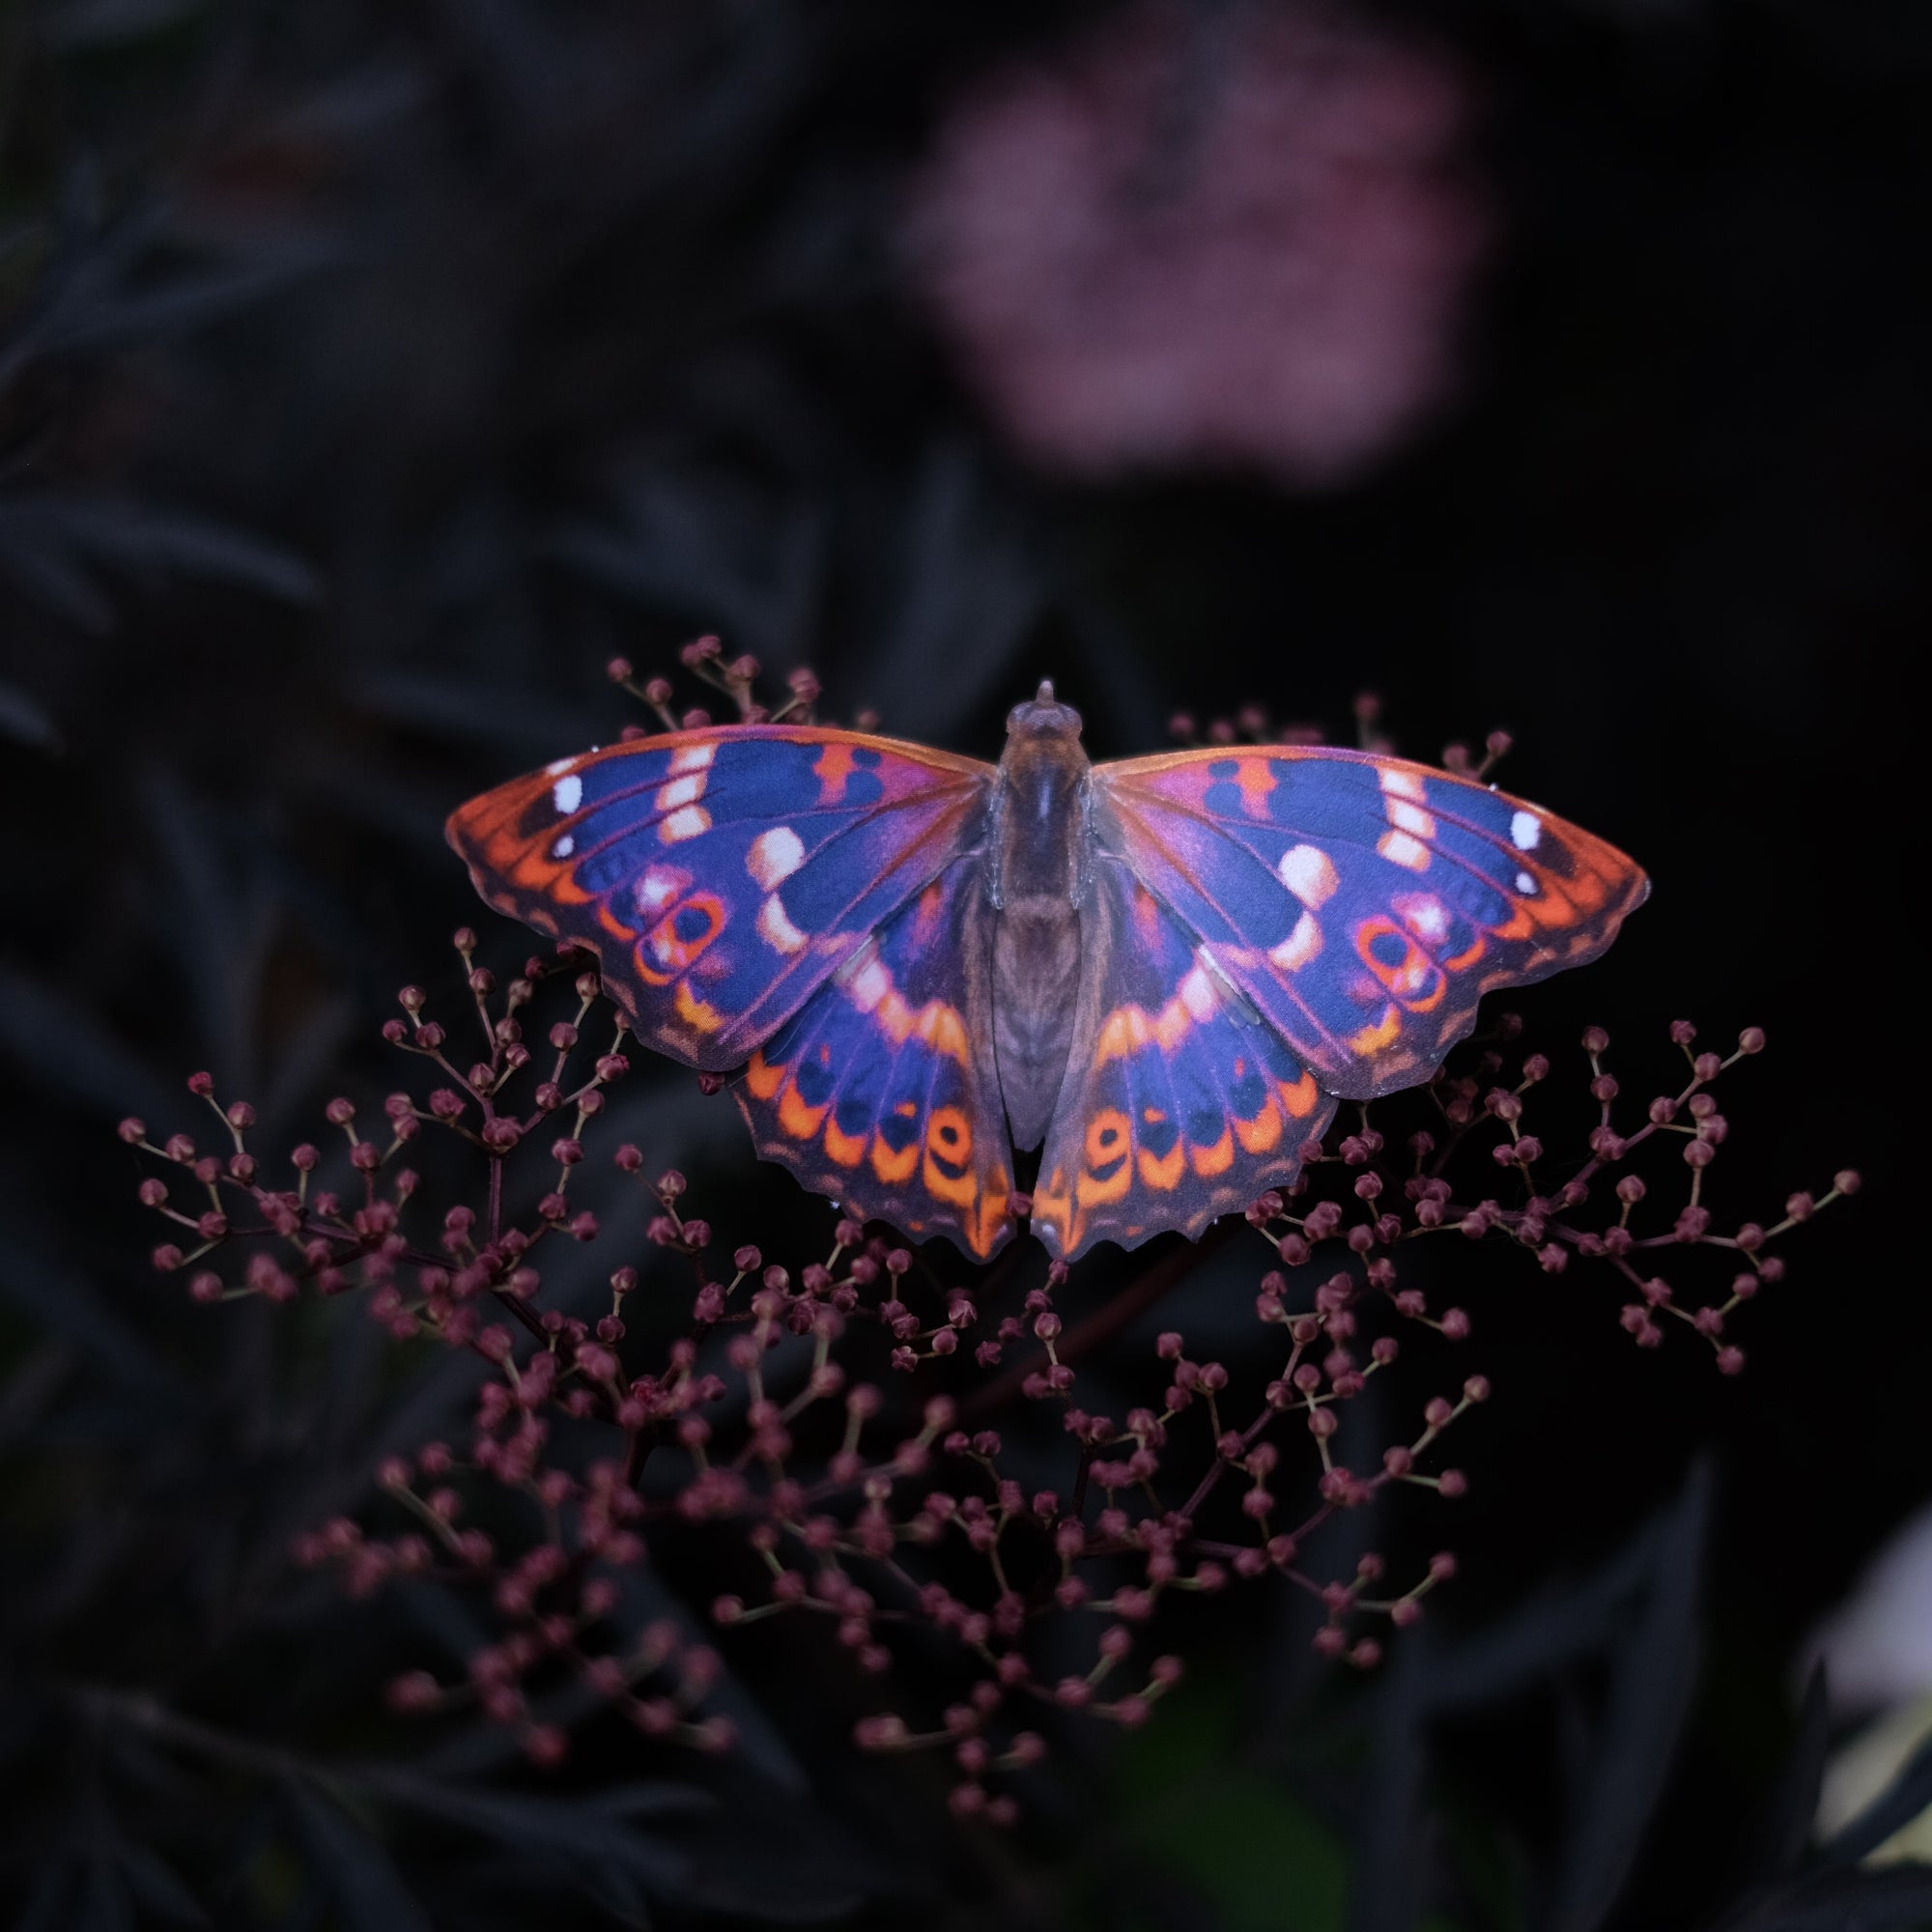 'Quartz' Butterfly Set Artist Wholesale